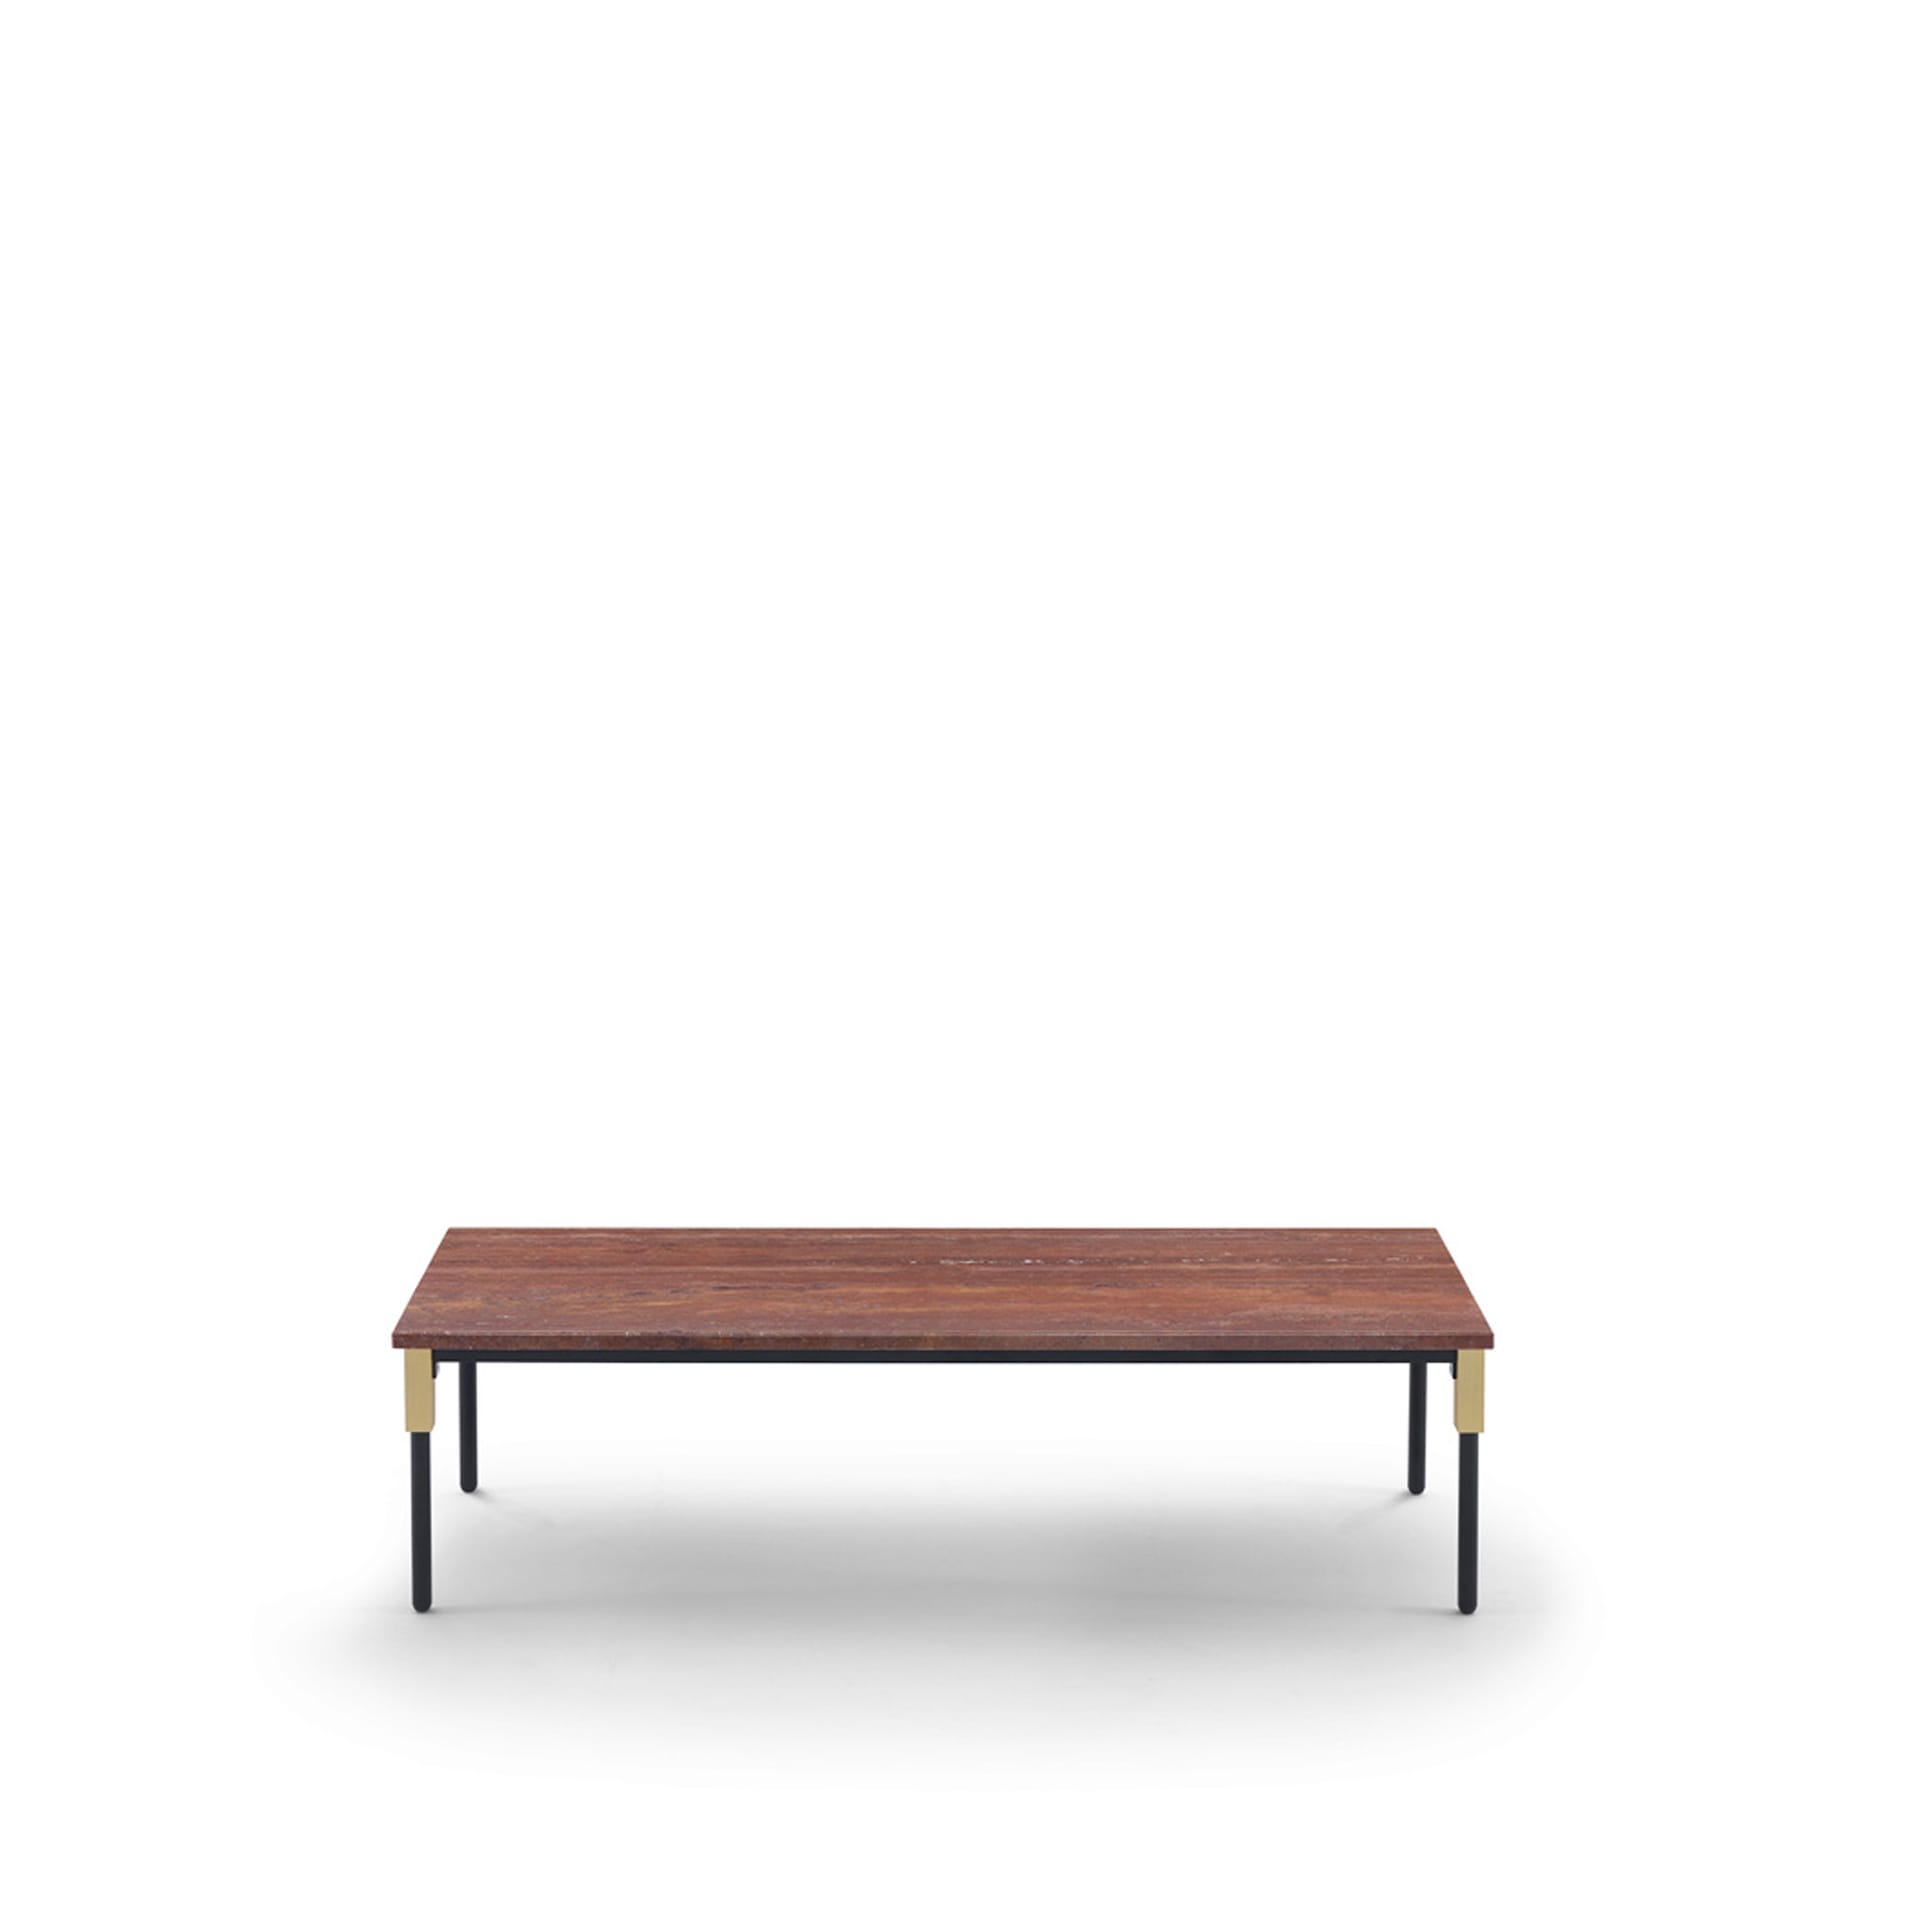 Match Small Table 122 x 42 cm - Travertino Rosso - Arflex - NO GA